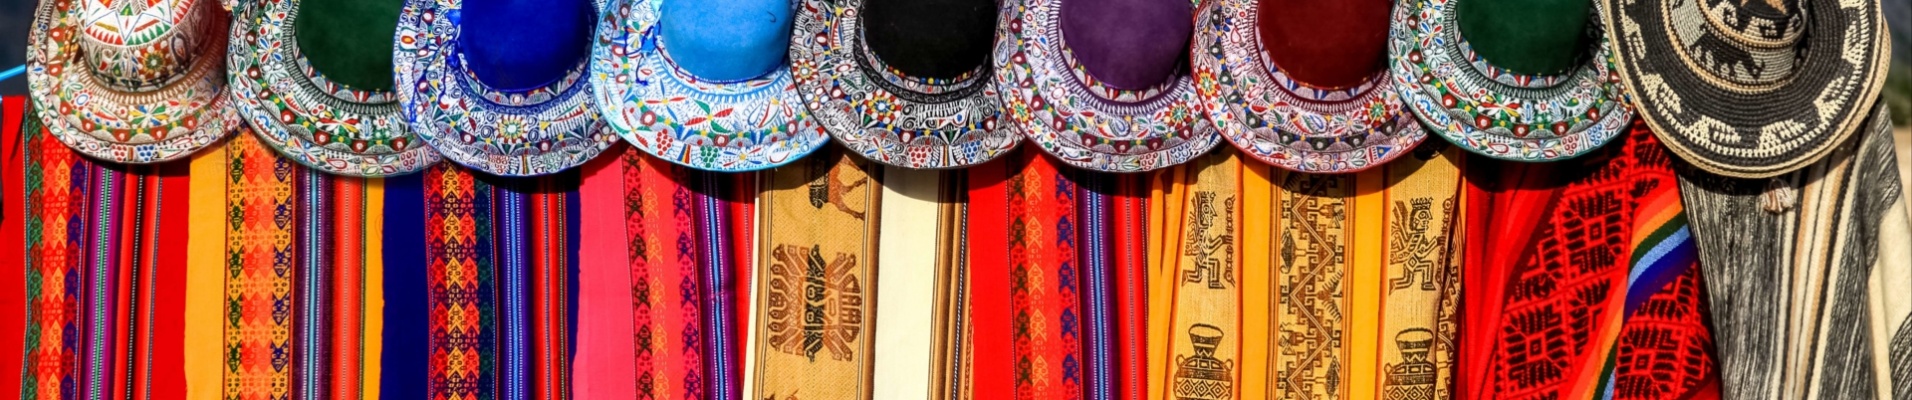 tradition-chapeaux-tissu-peruvien